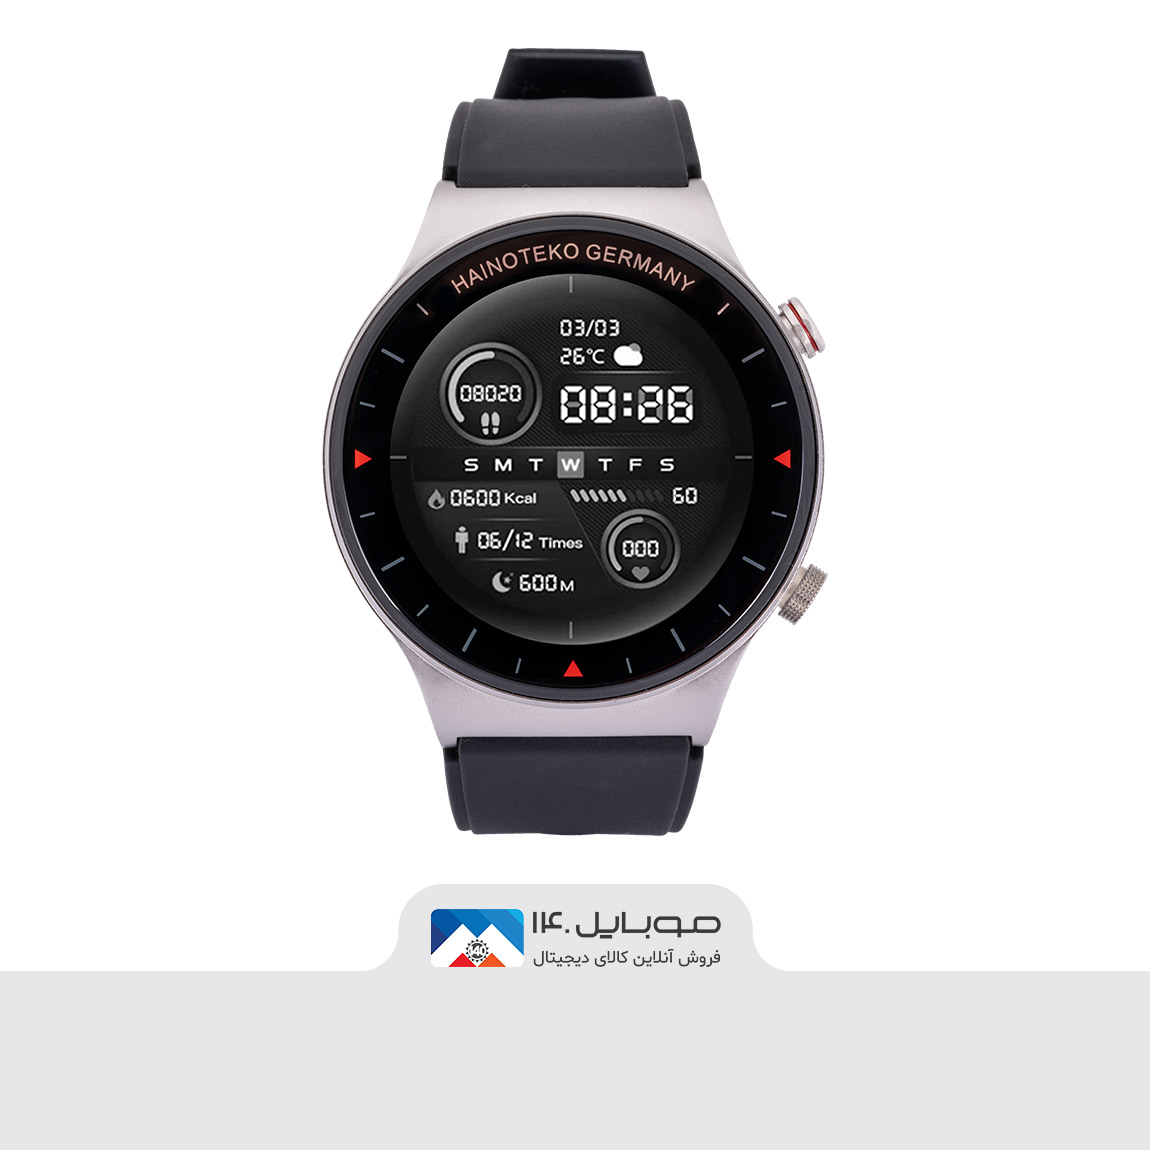 Hainoteko C5 Smart Watch 5